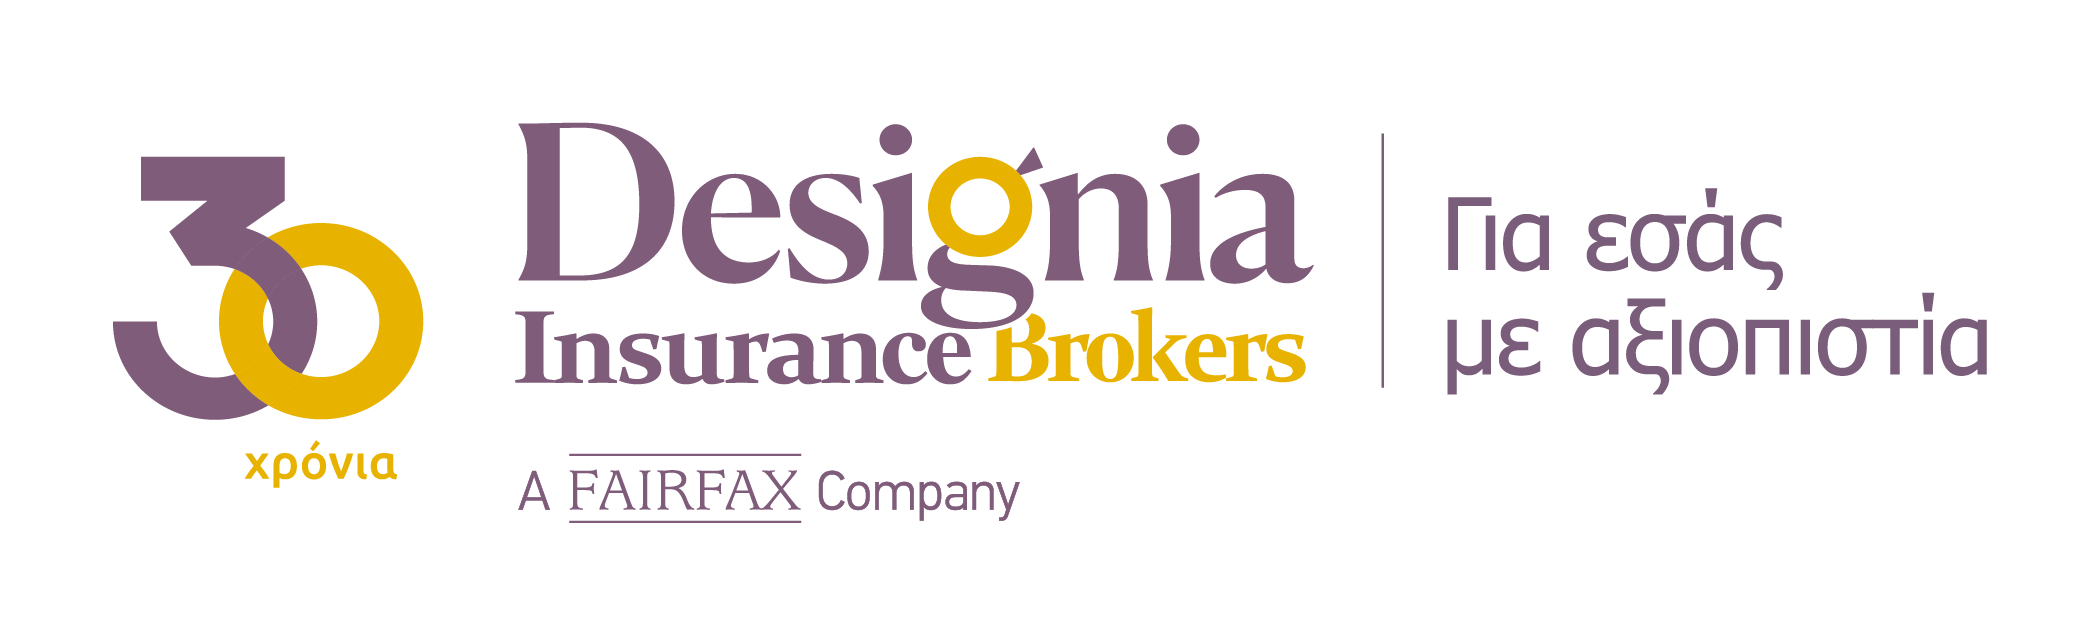 Designia Insurance Brokers